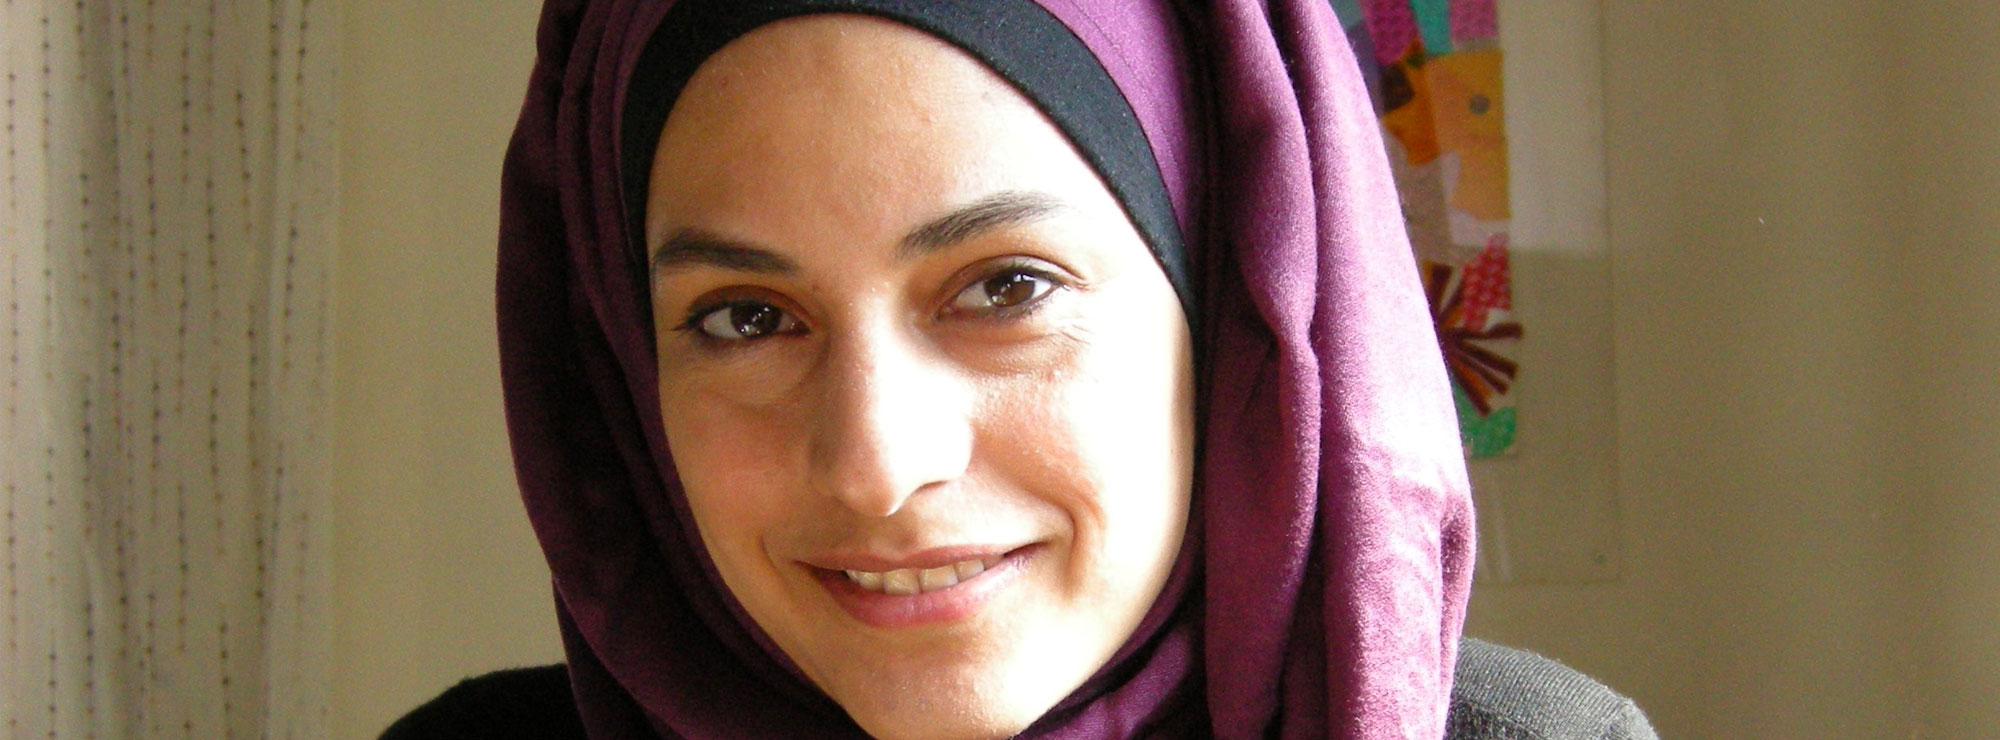 Marwa Al-Sabouni Interview on Mass Housing